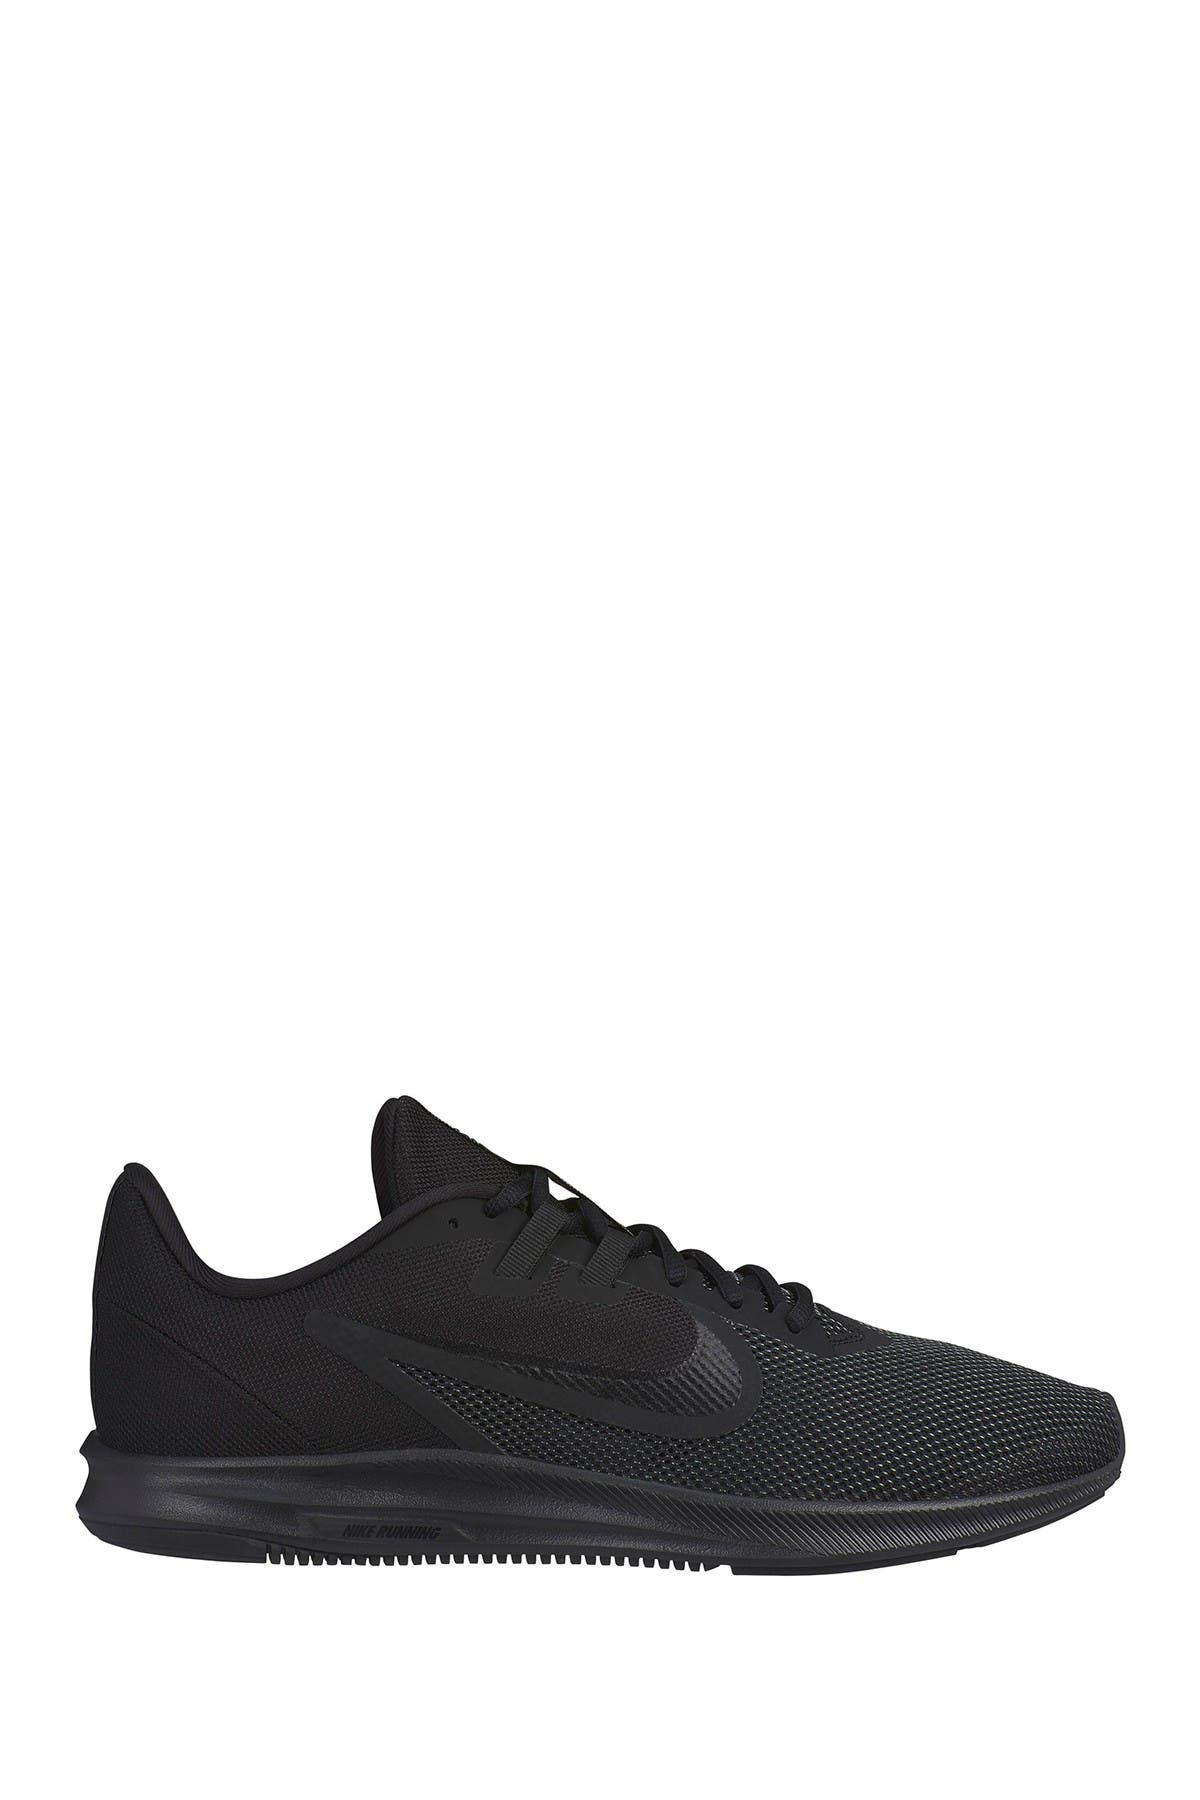 Nike | Downshifter 9 Running Shoe 